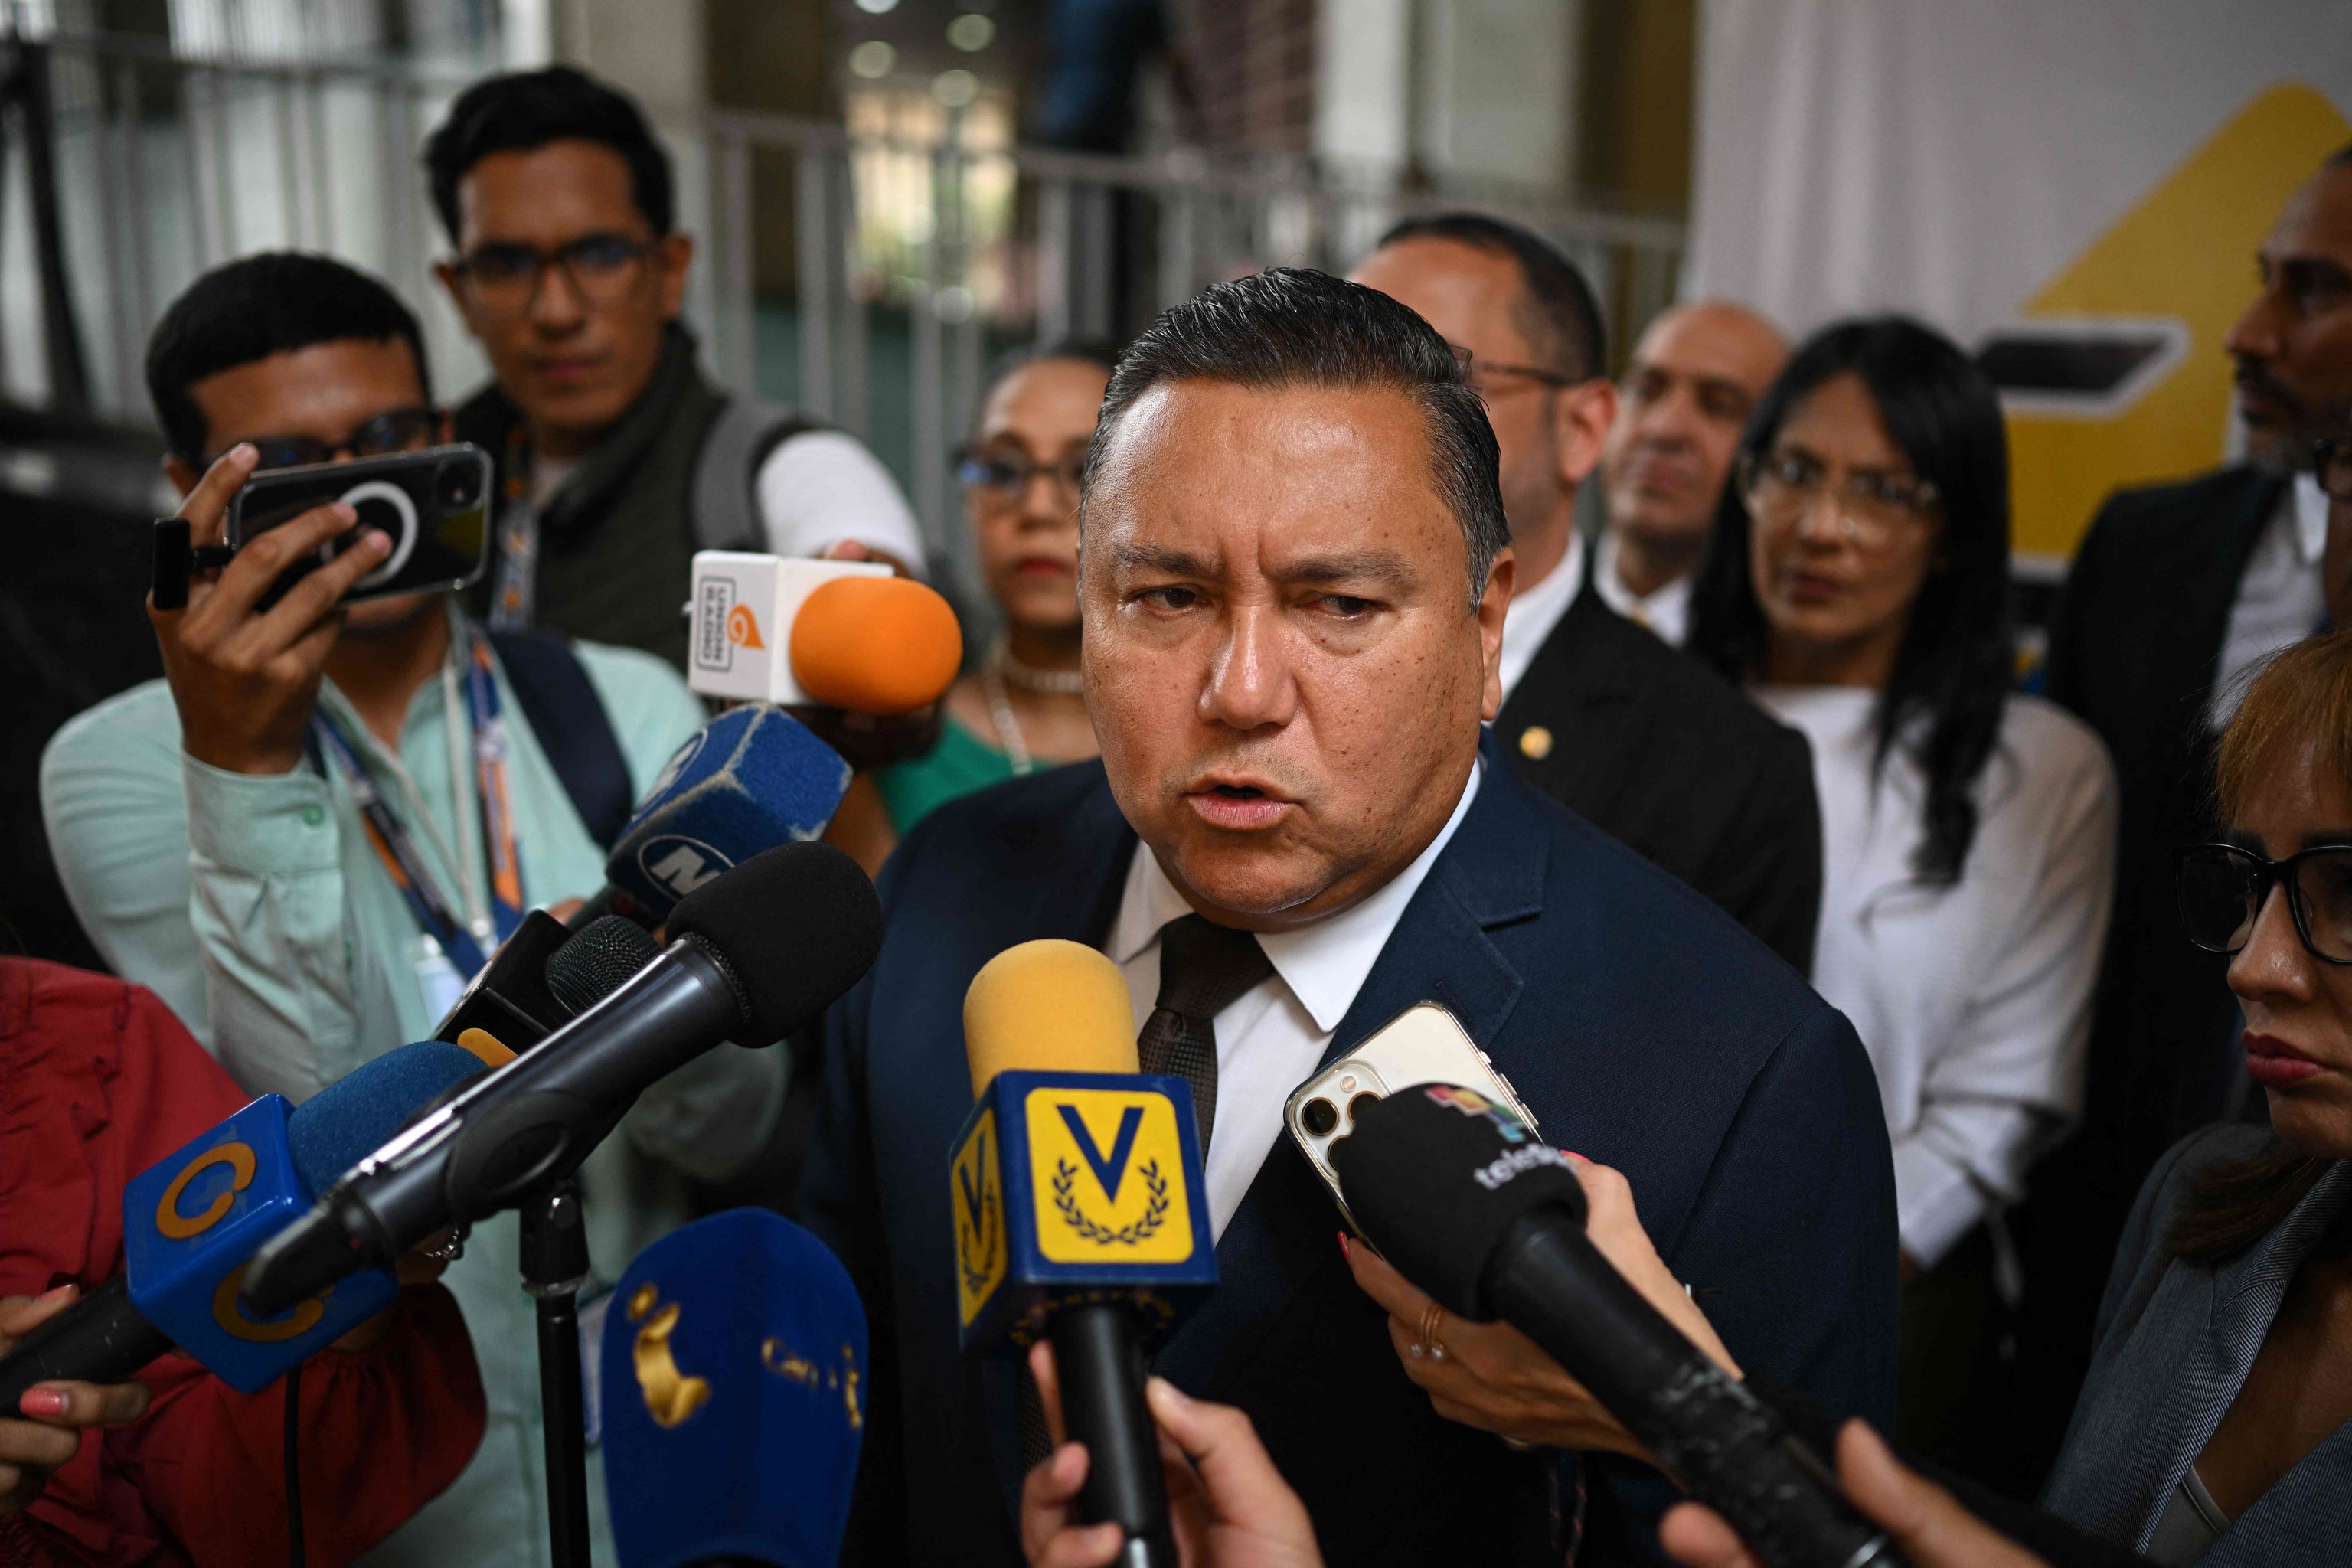 El chavismo sólo acepta un candidato «potable» de la oposición real a la medida de Maduro